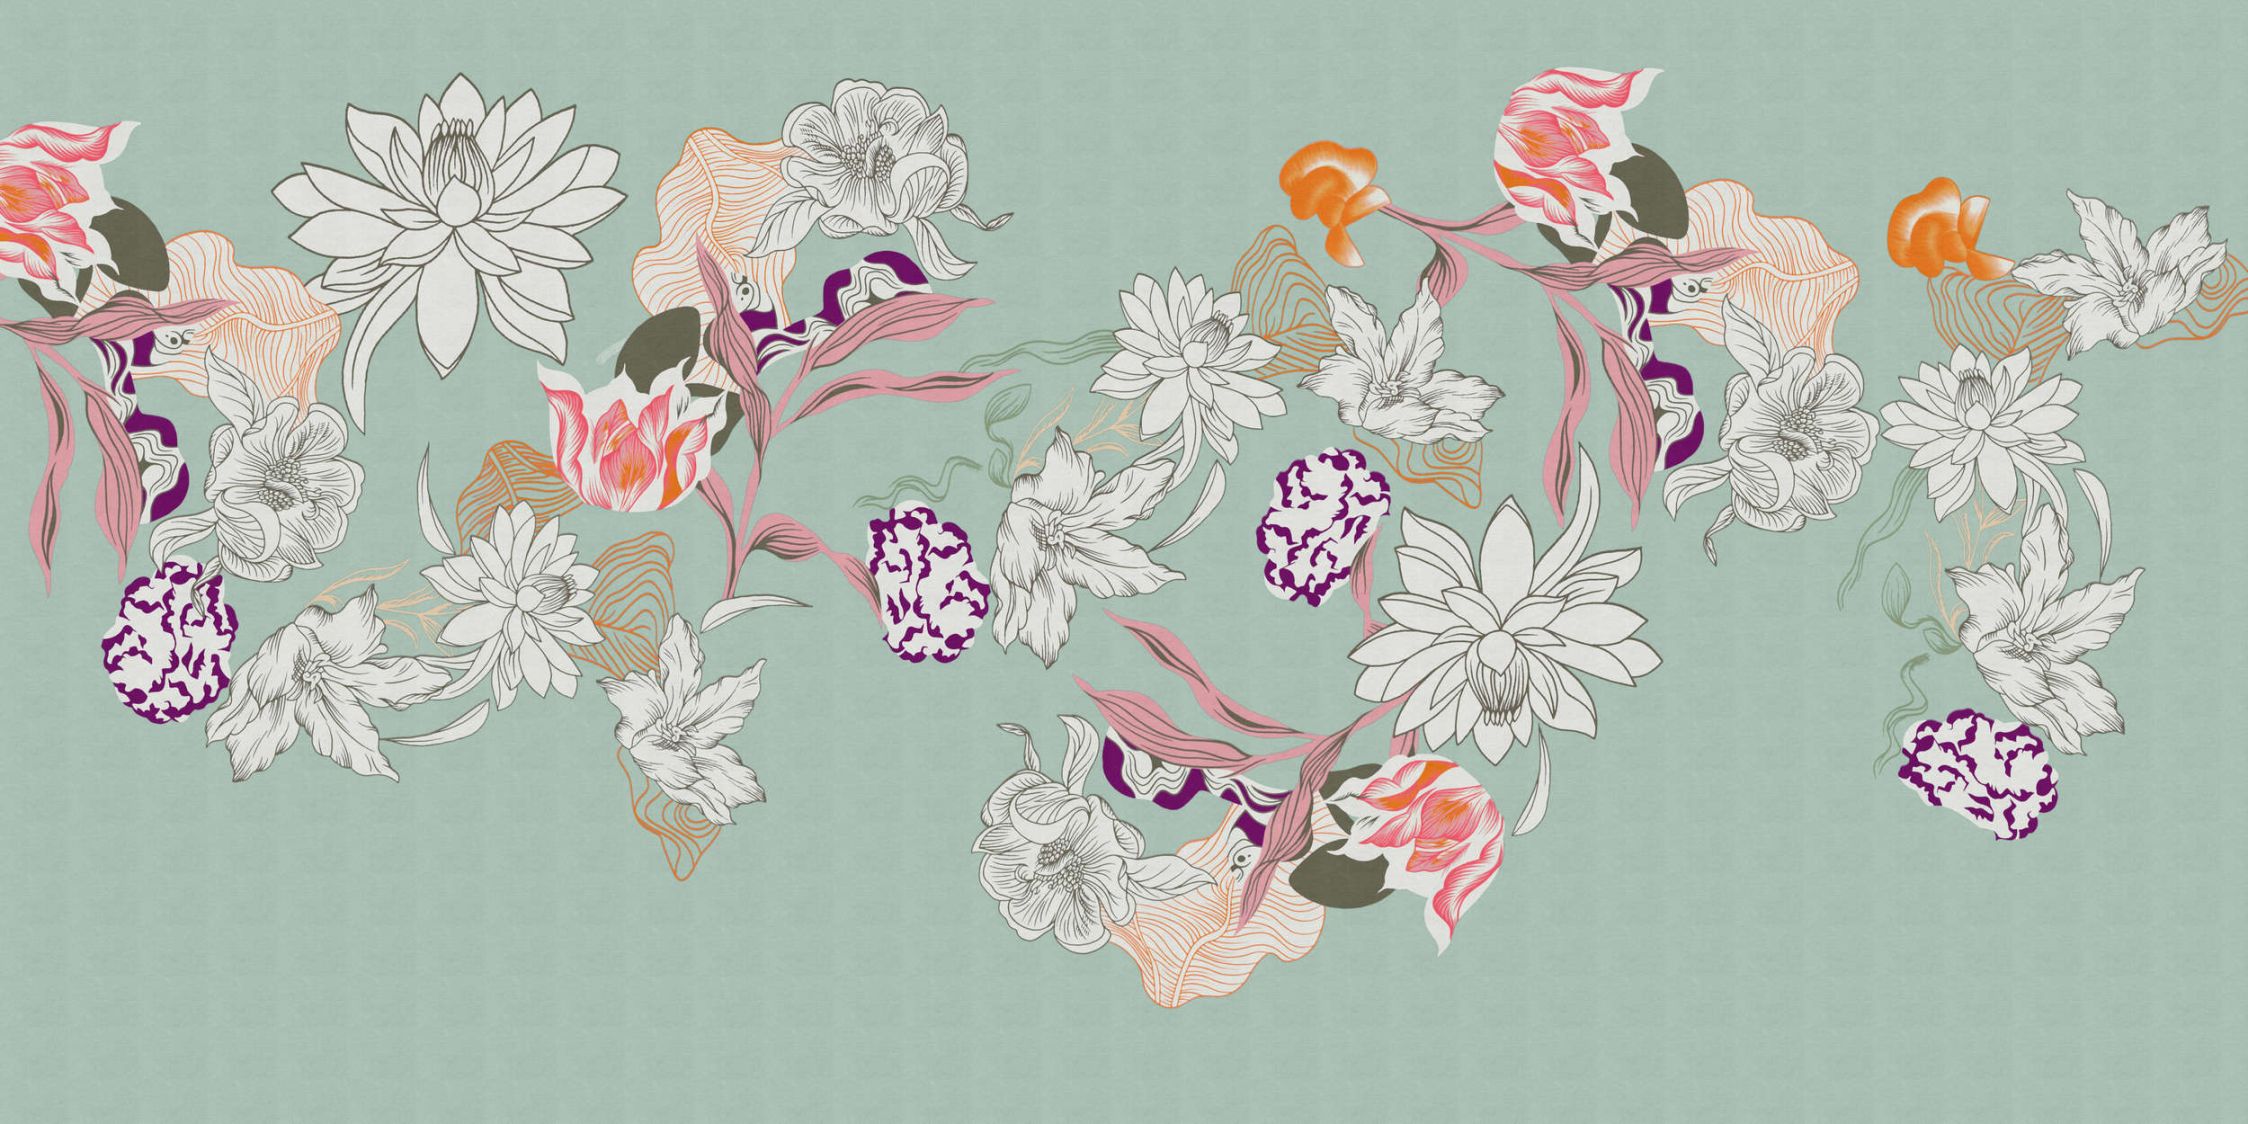             Digital behang »botany 1« - Abstracte bloemmotieven met oranje accenten tegen een subtiele linnen textuur - Matte, gladde vliesstof
        